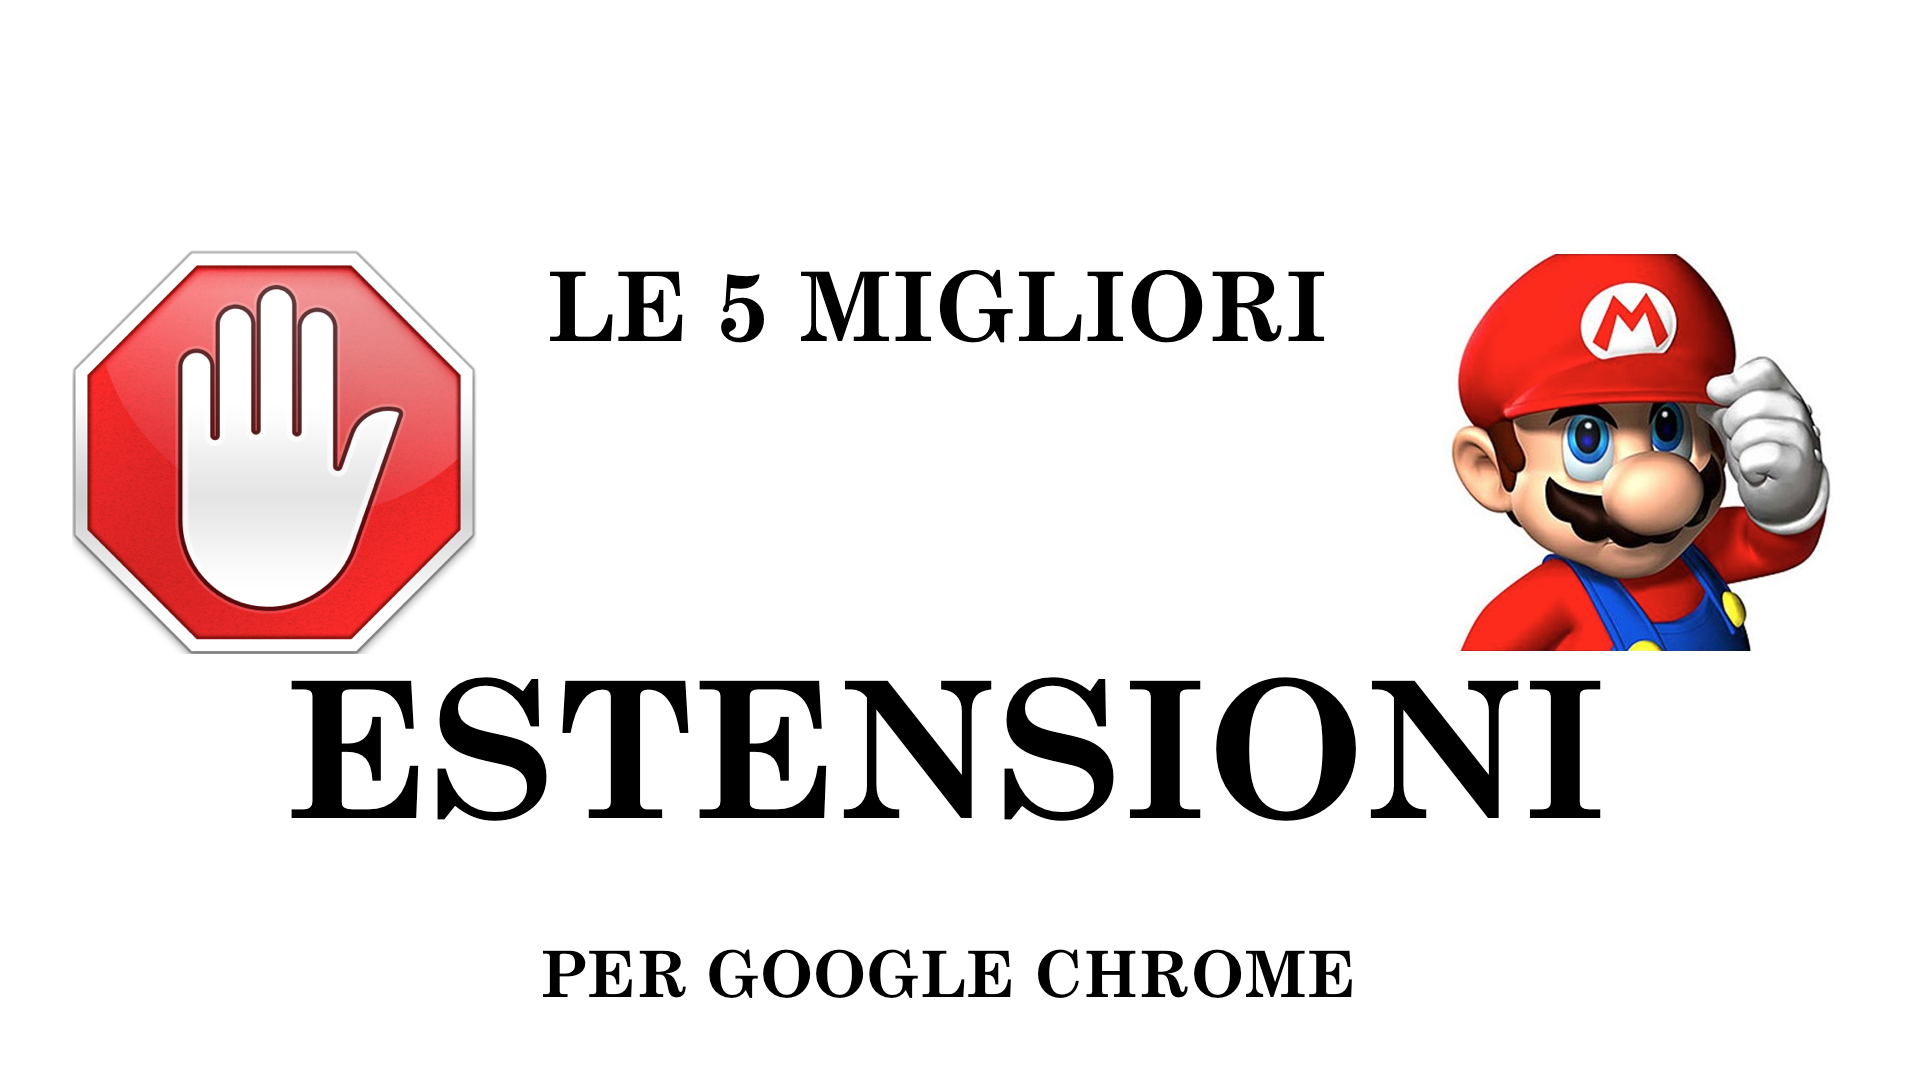 Le 5 MIGLIORI ESTENSIONI per Google Chrome